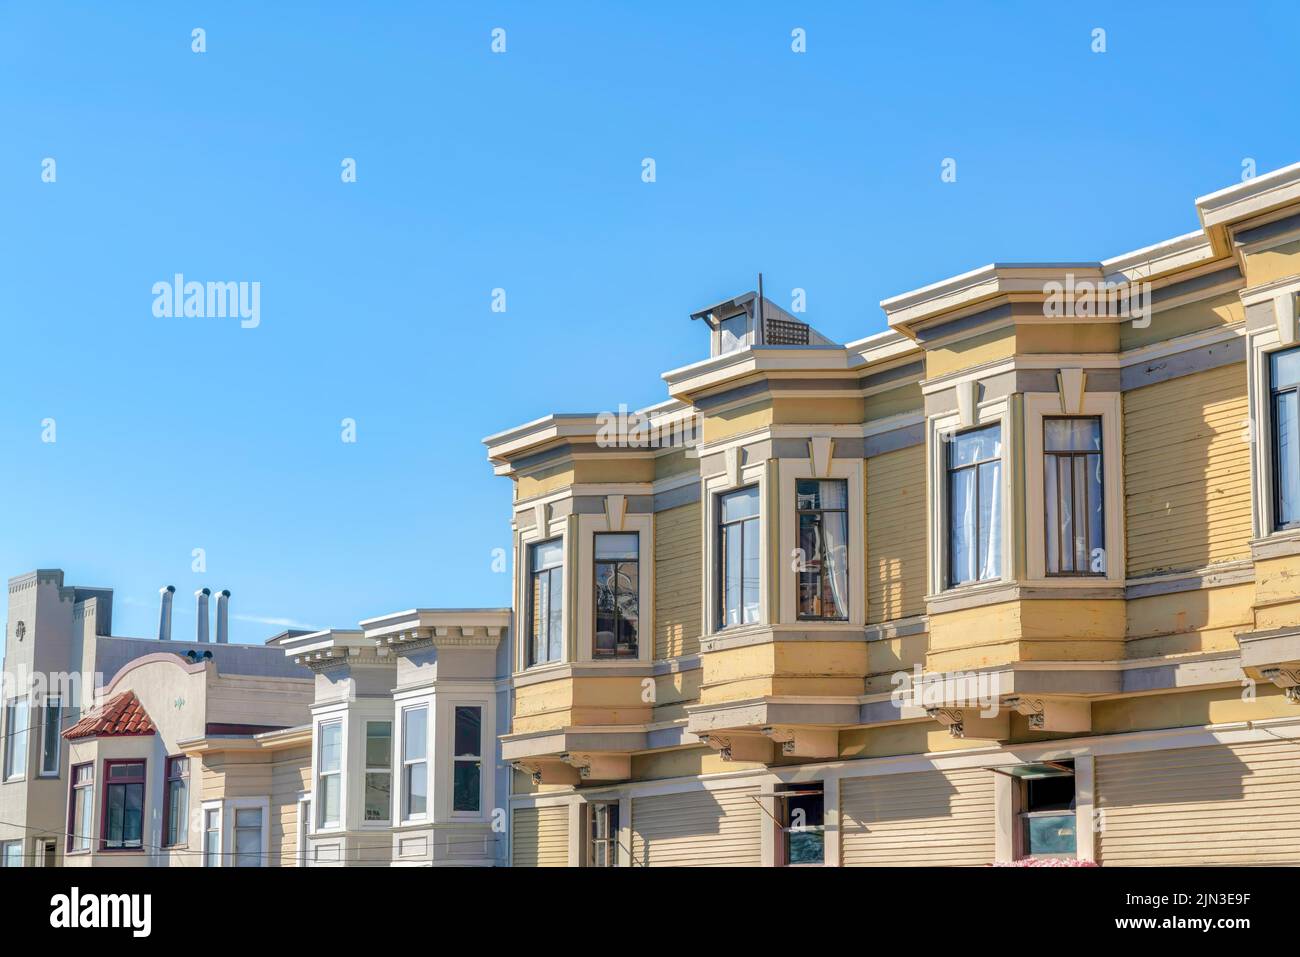 Rangée de maisons à San Francisco, Californie avec des bâtiments anciens et nouveaux. Il y a un appartement sur la droite avec une parement en bois jaune avec des intempéries Banque D'Images